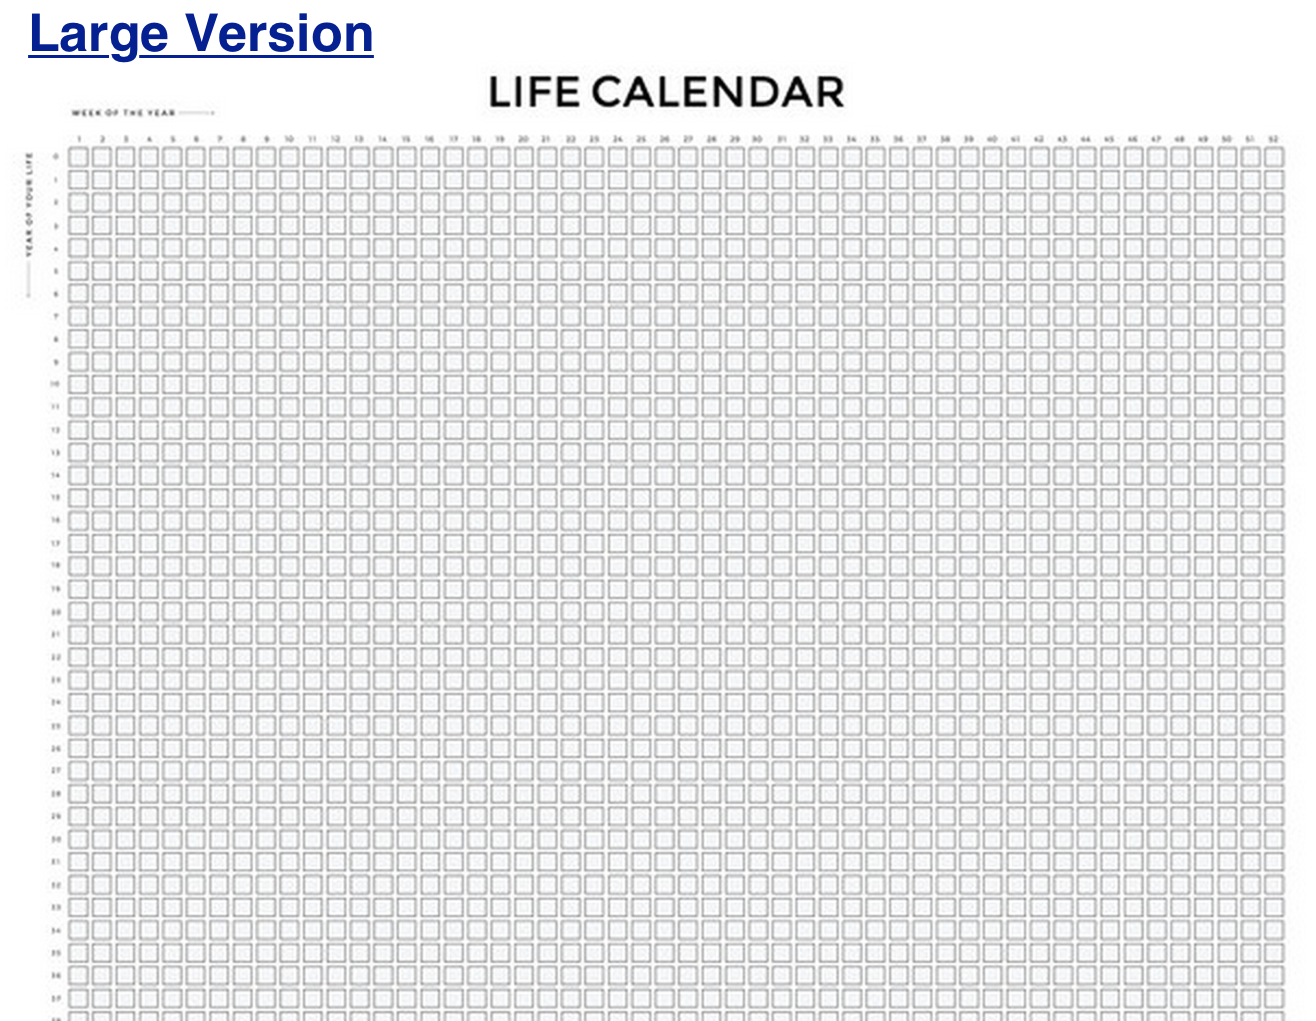 Календарь всей жизни на одном листе Calendar-Button-Large